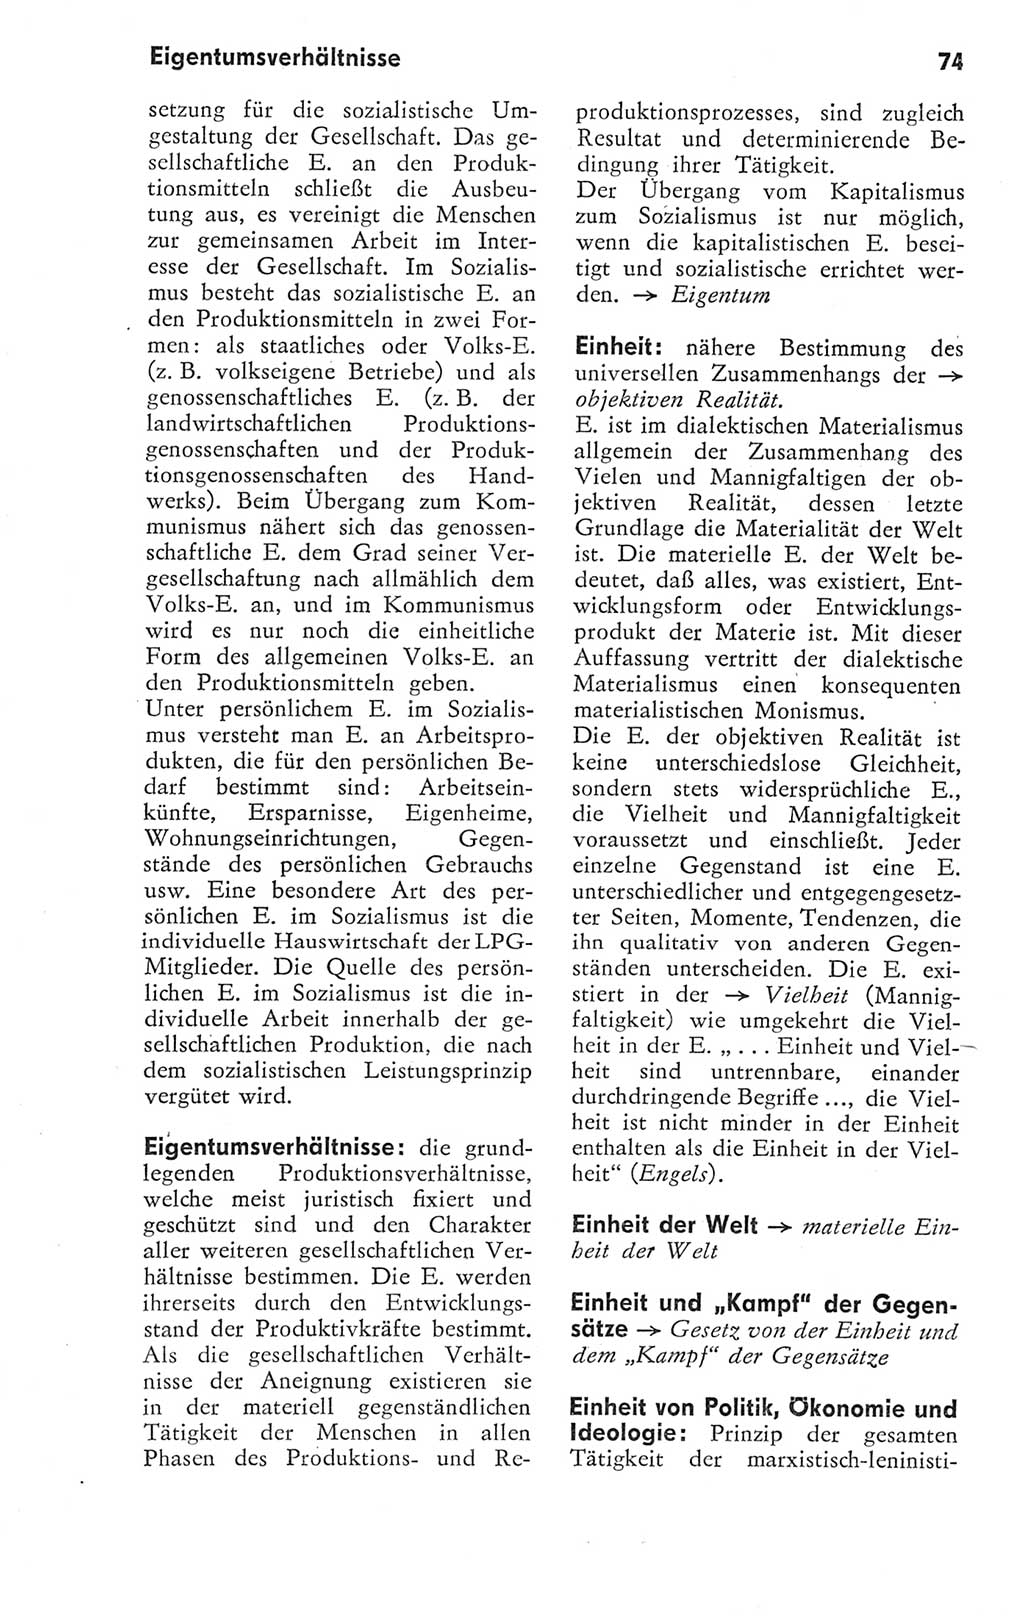 Kleines Wörterbuch der marxistisch-leninistischen Philosophie [Deutsche Demokratische Republik (DDR)] 1974, Seite 74 (Kl. Wb. ML Phil. DDR 1974, S. 74)